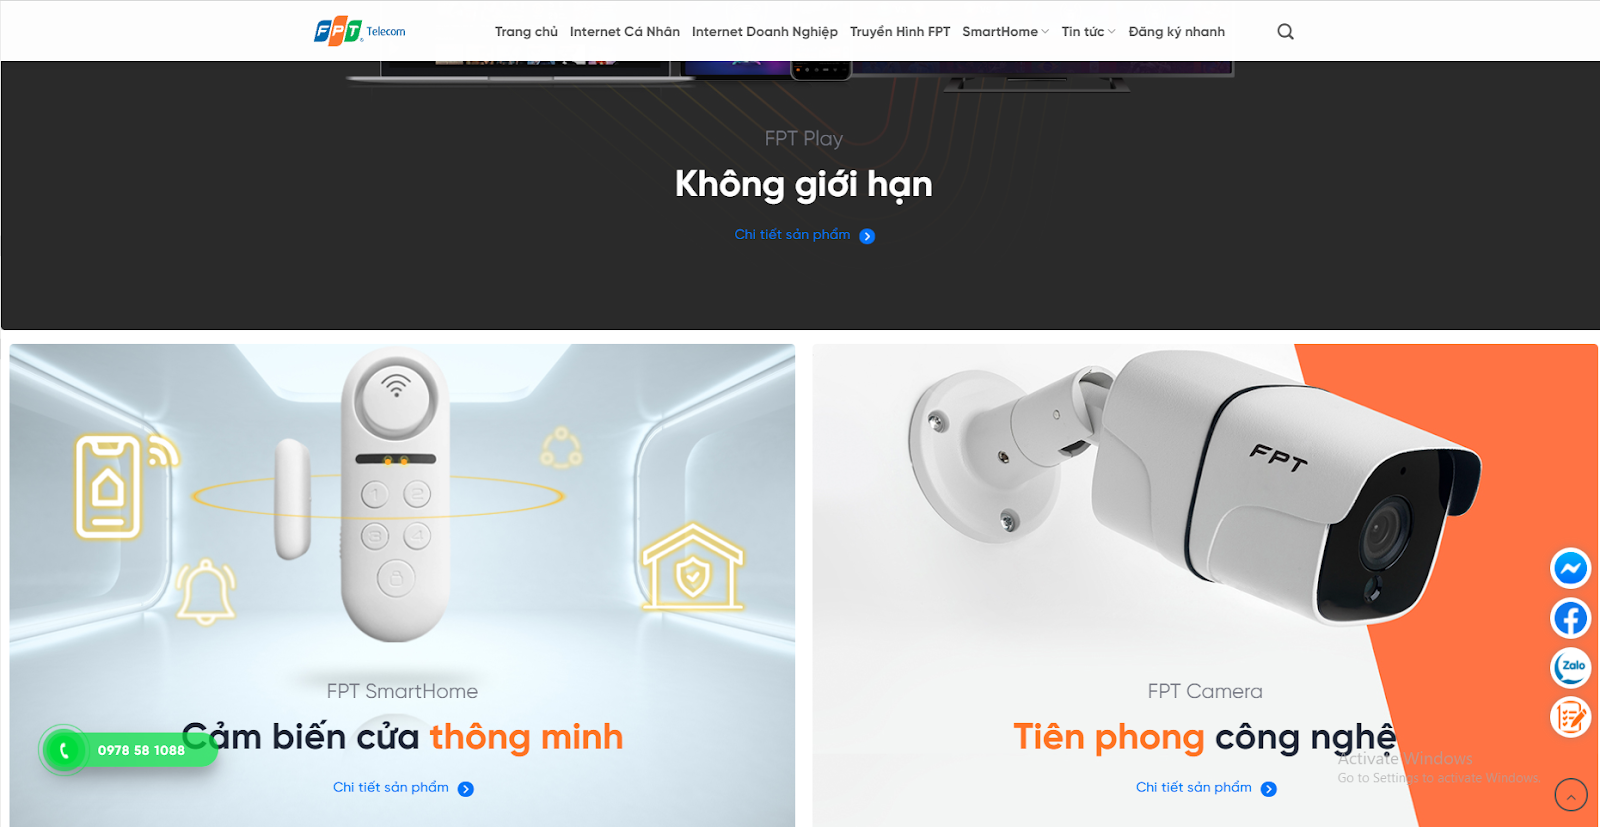 Blogfpt.vn - Website đăng ký lắp đặt internet FPT, Truyền hình, Camera và Smart Home ưu đãi giá rẻ nhiều khuyến mãi nhất. 8